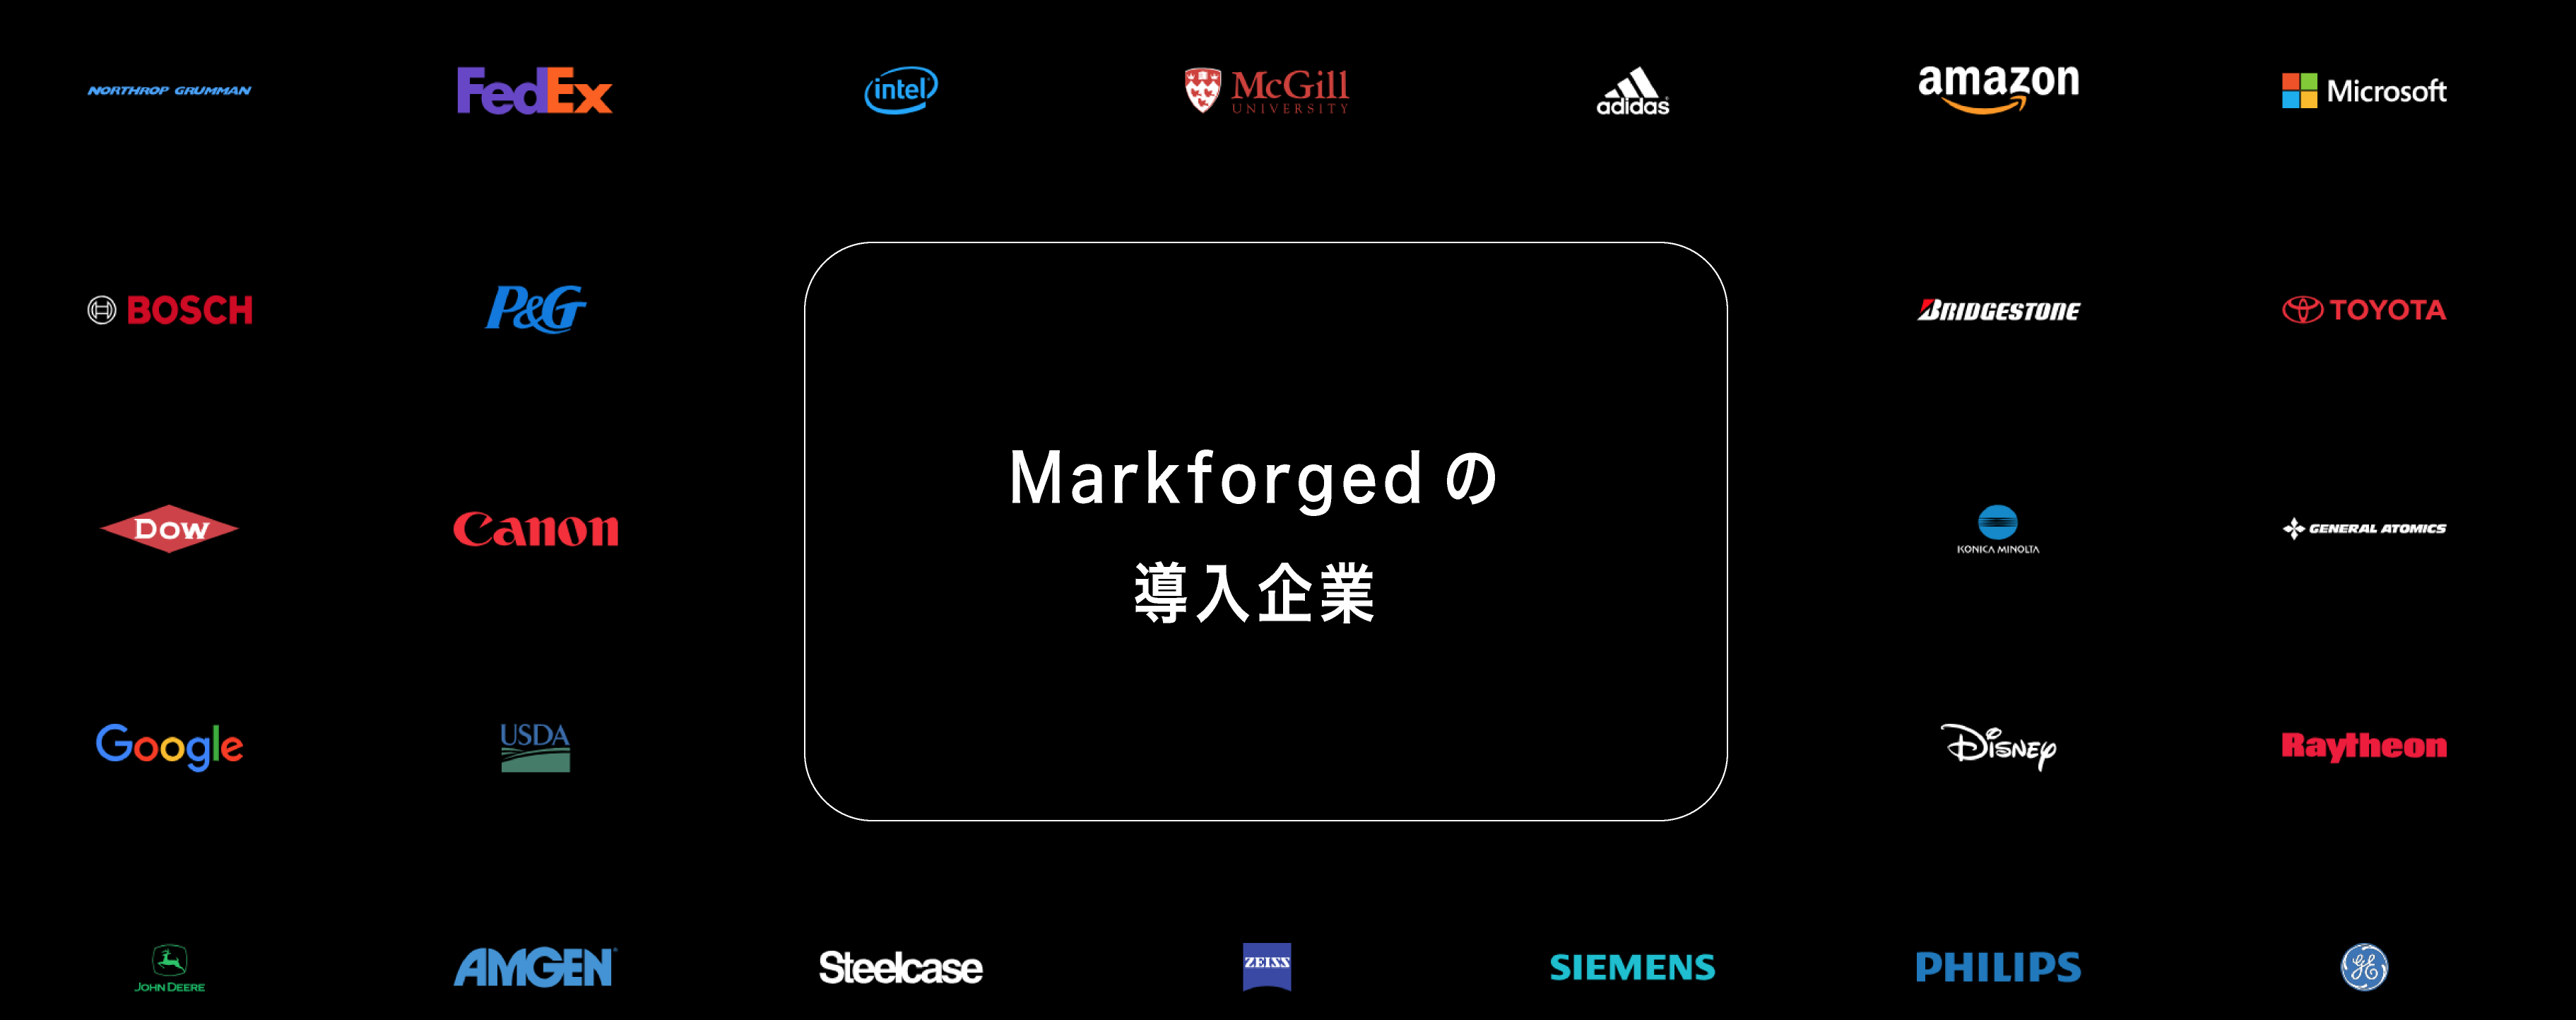 Markforgedの導入企業